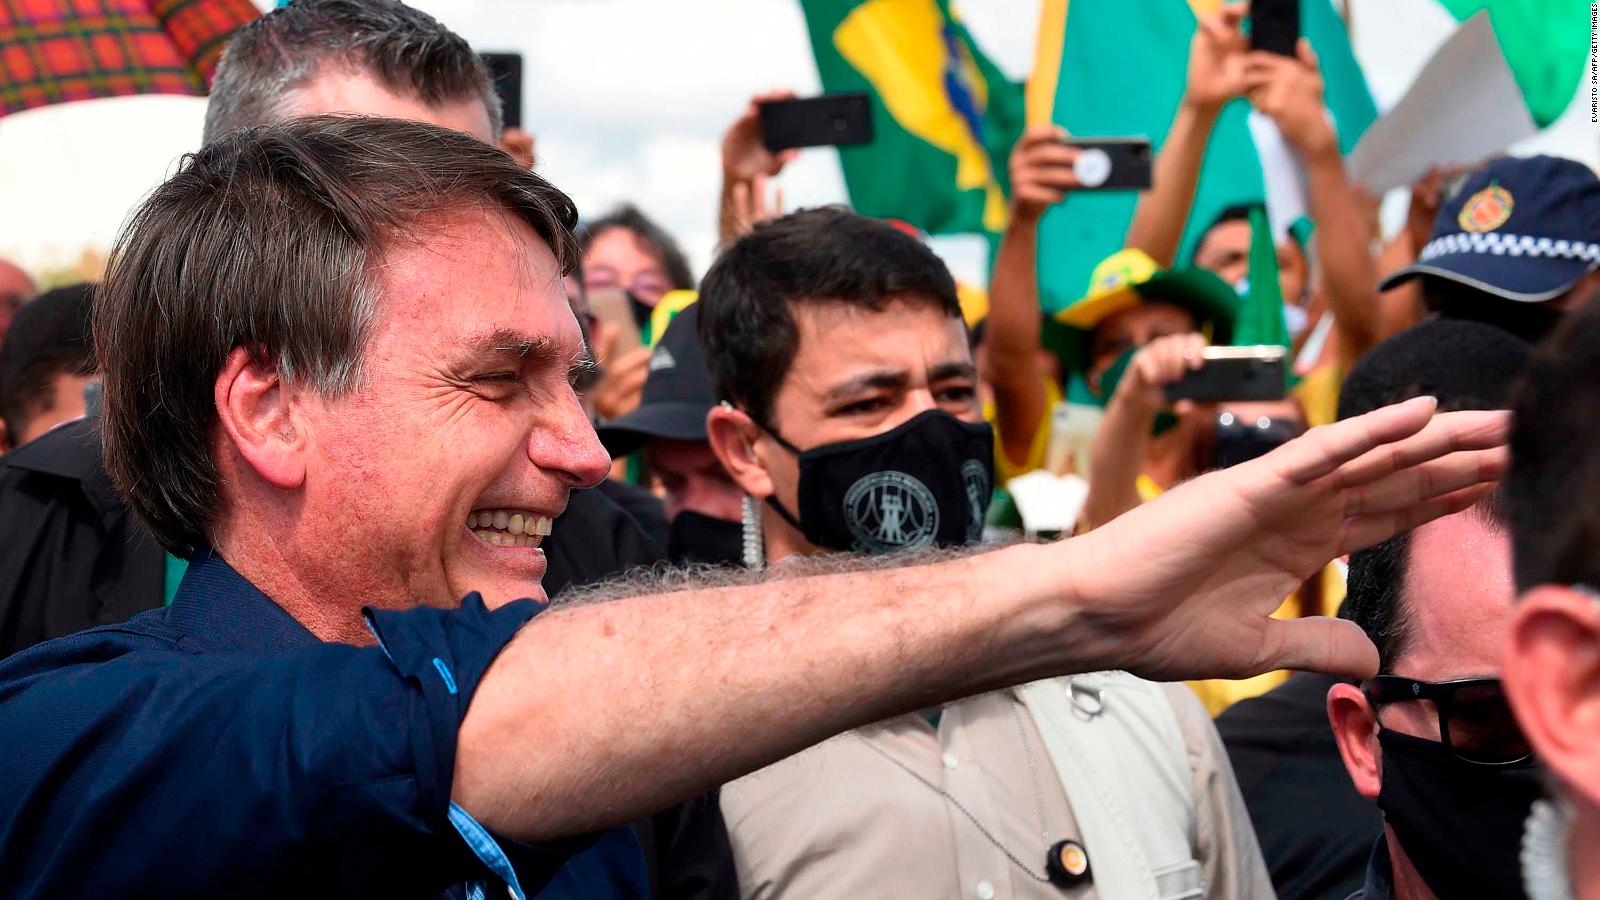 Alcalde brasileño le pide a Bolsonaro callarse y renunciar